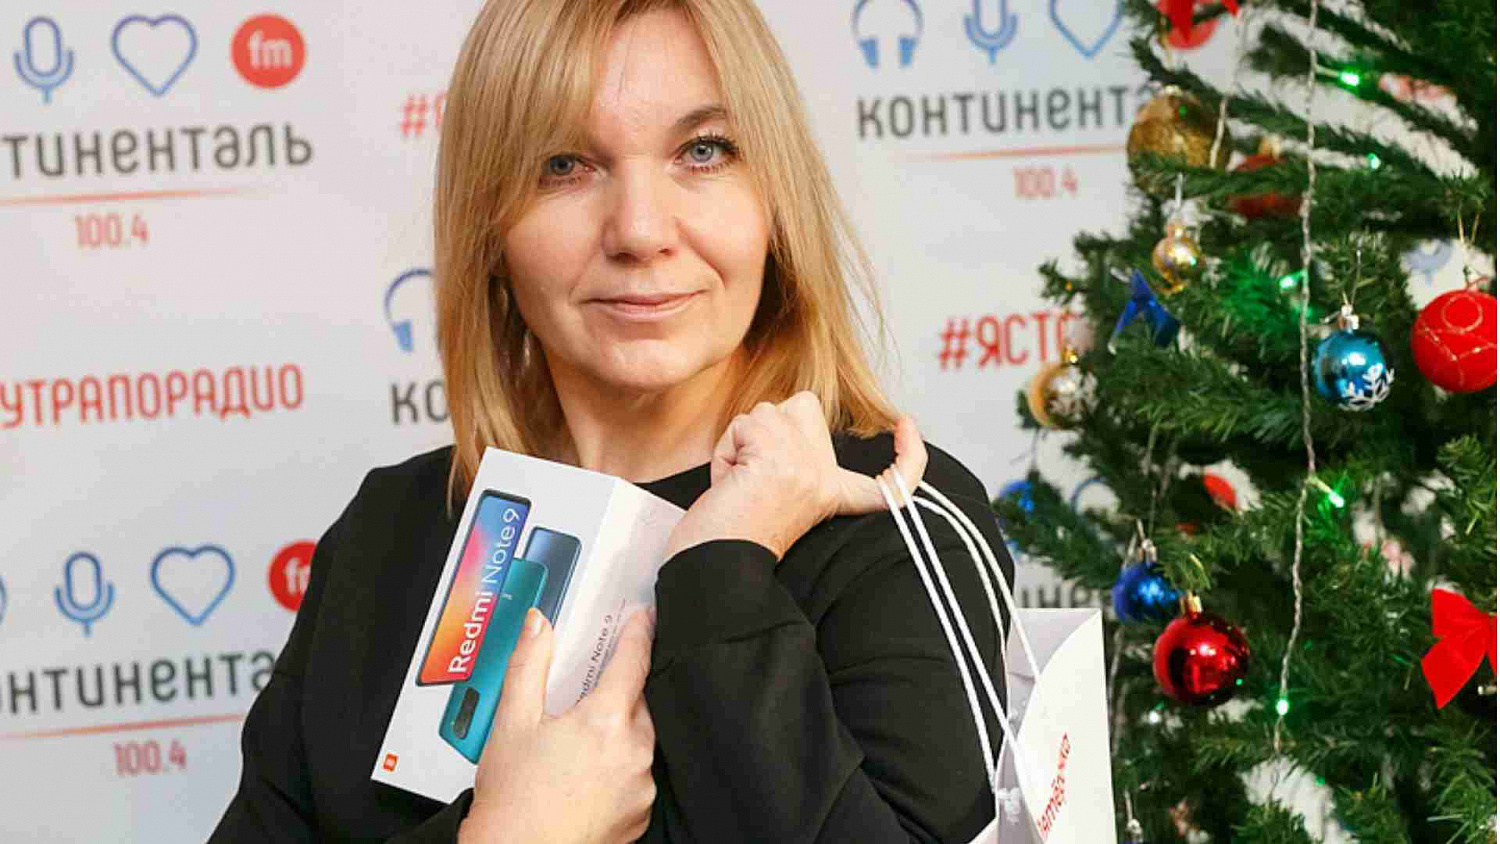 Более 100 тысяч рублей радио «Континенталь» подарило челябинцам за ёлочные игрушки!